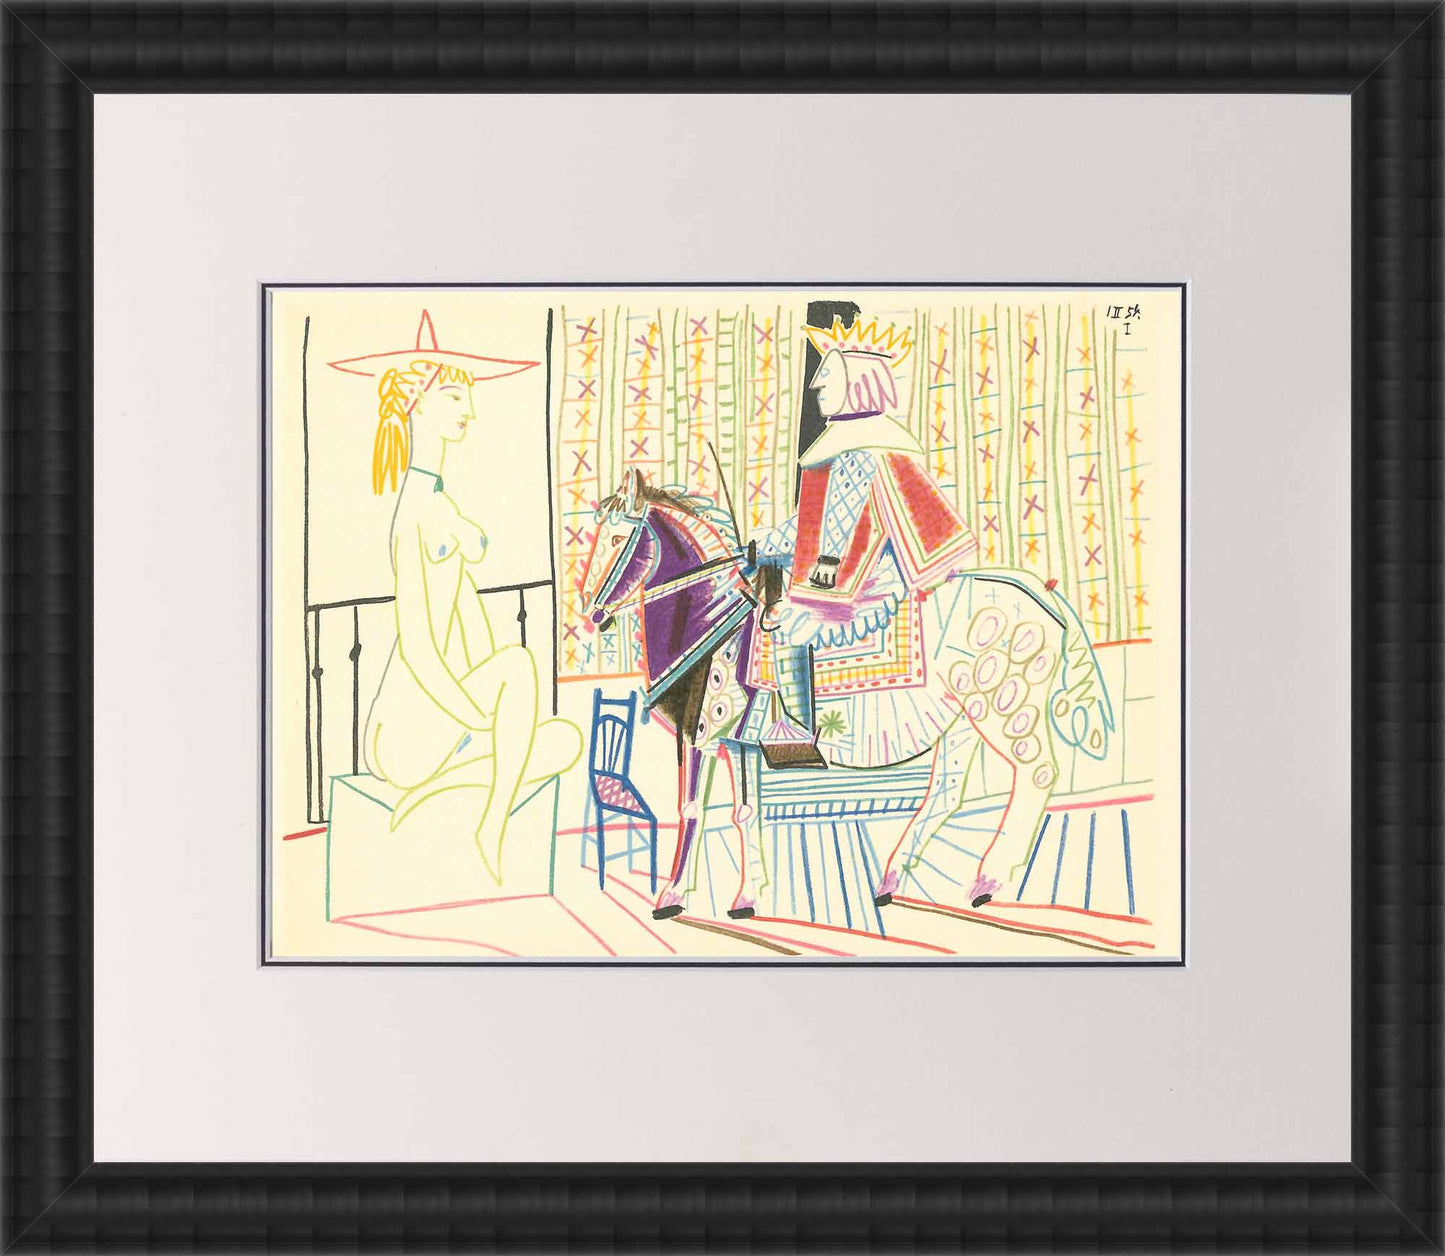 Pablo Picasso "Human Comedy" Verve Edition: Vol. 8 No 29 Frame